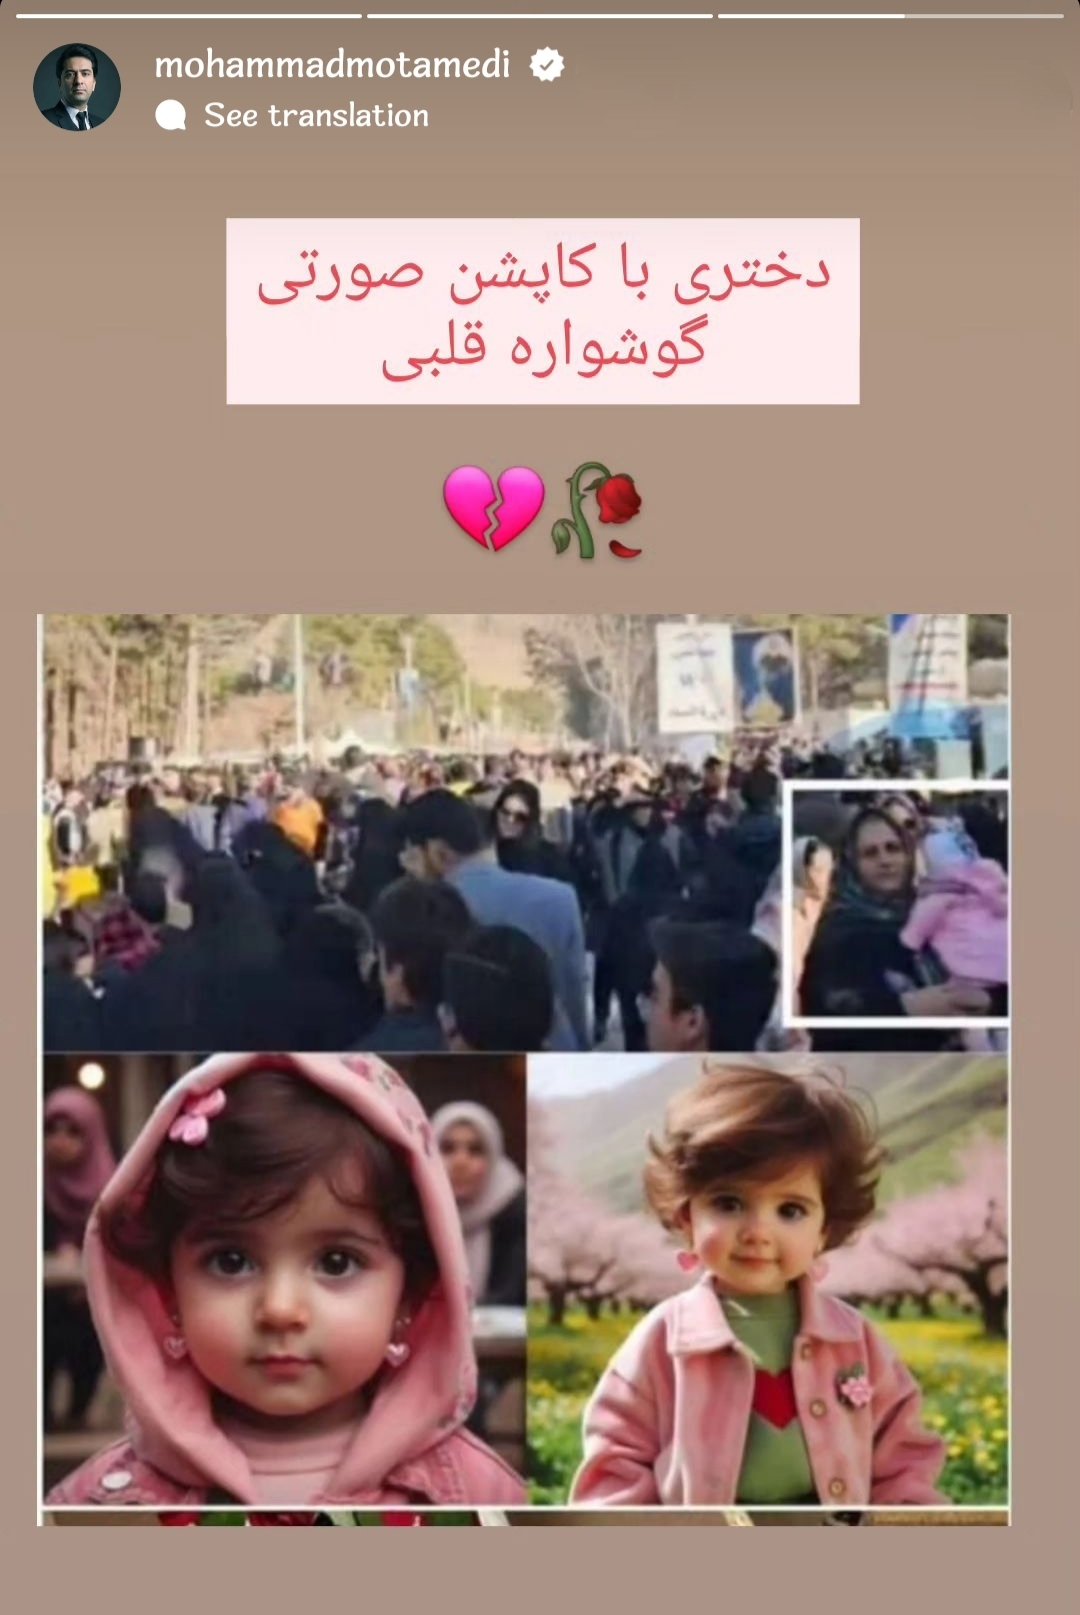 واکنش محمد معتمدی به حادثه تروریستی کرمان